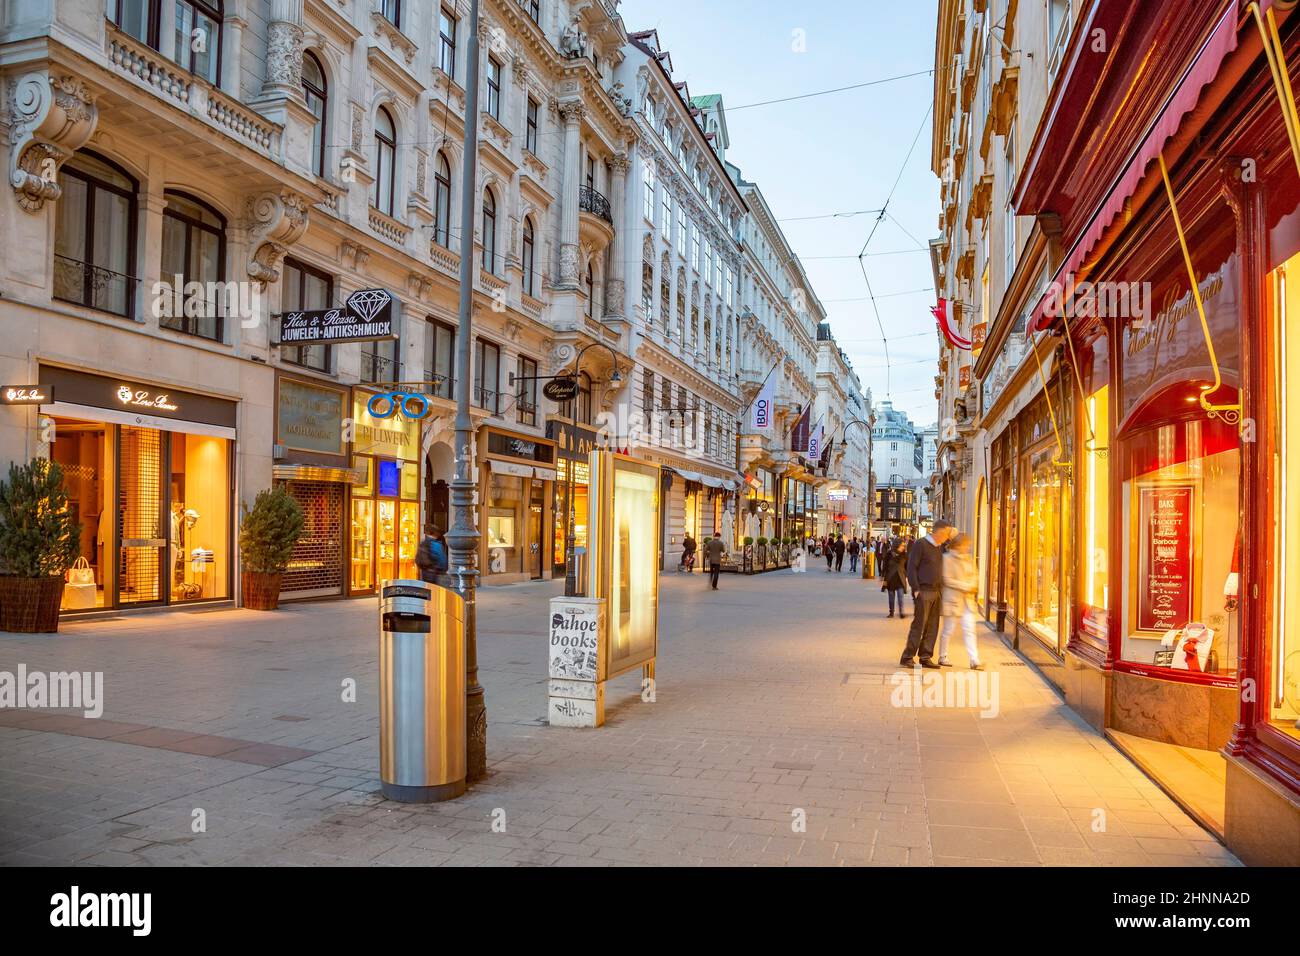 La gente visita Graben en Viena por la noche. La calle Graben está entre las calles más reconocidas de Viena, que es la capital de Austria Foto de stock